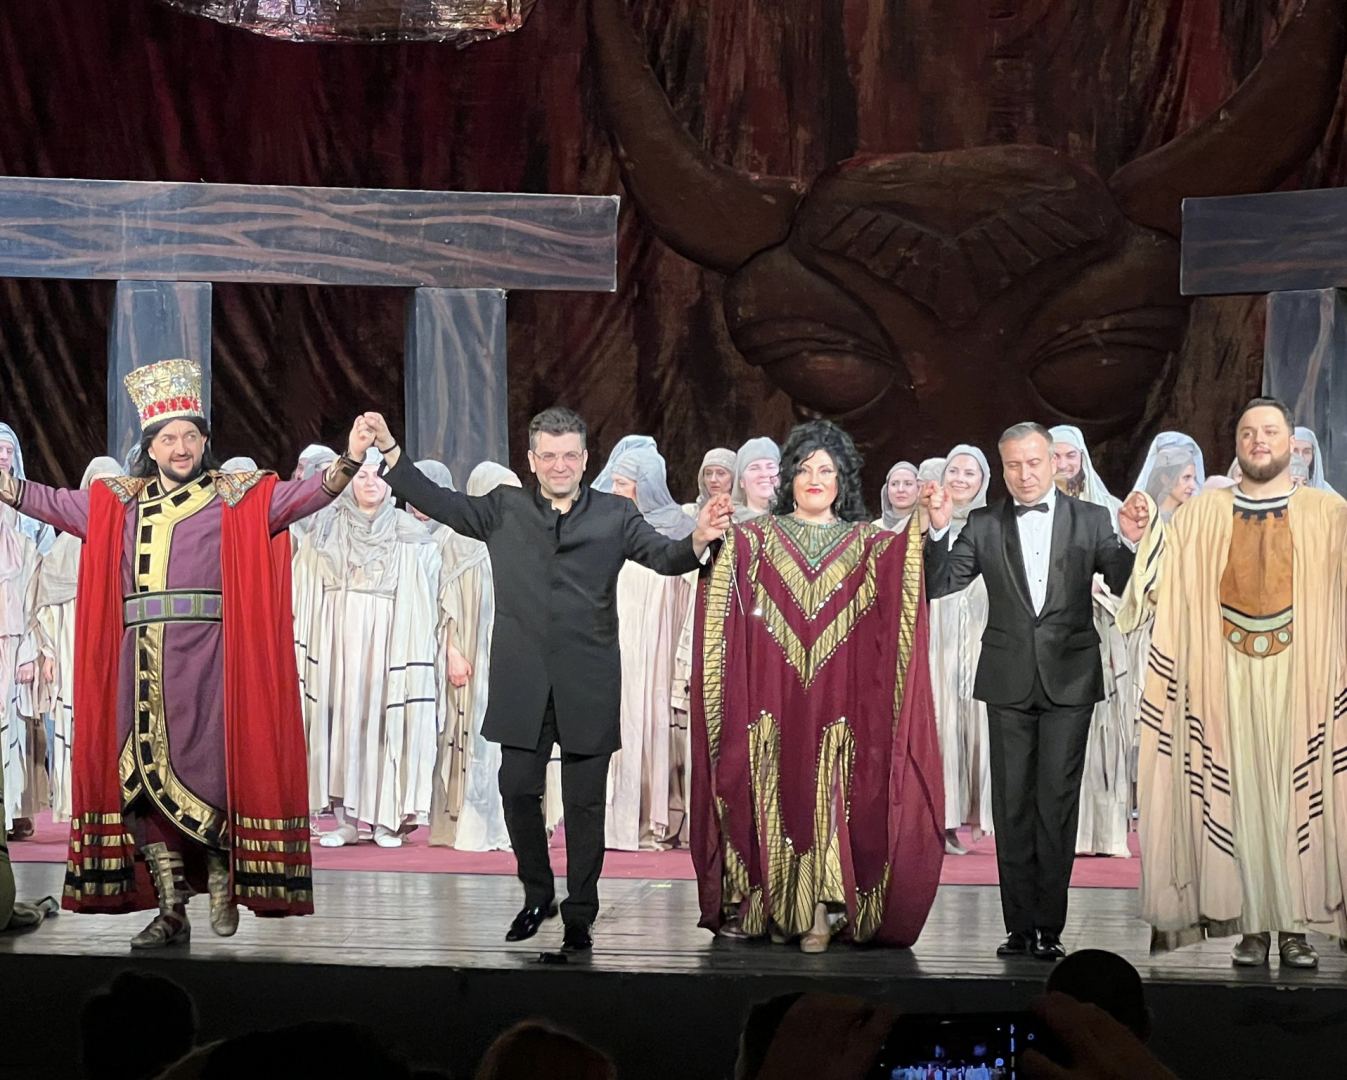 Впервые в истории театра Бухареста представлен спектакль под управлением азербайджанского дирижера (ФОТО)